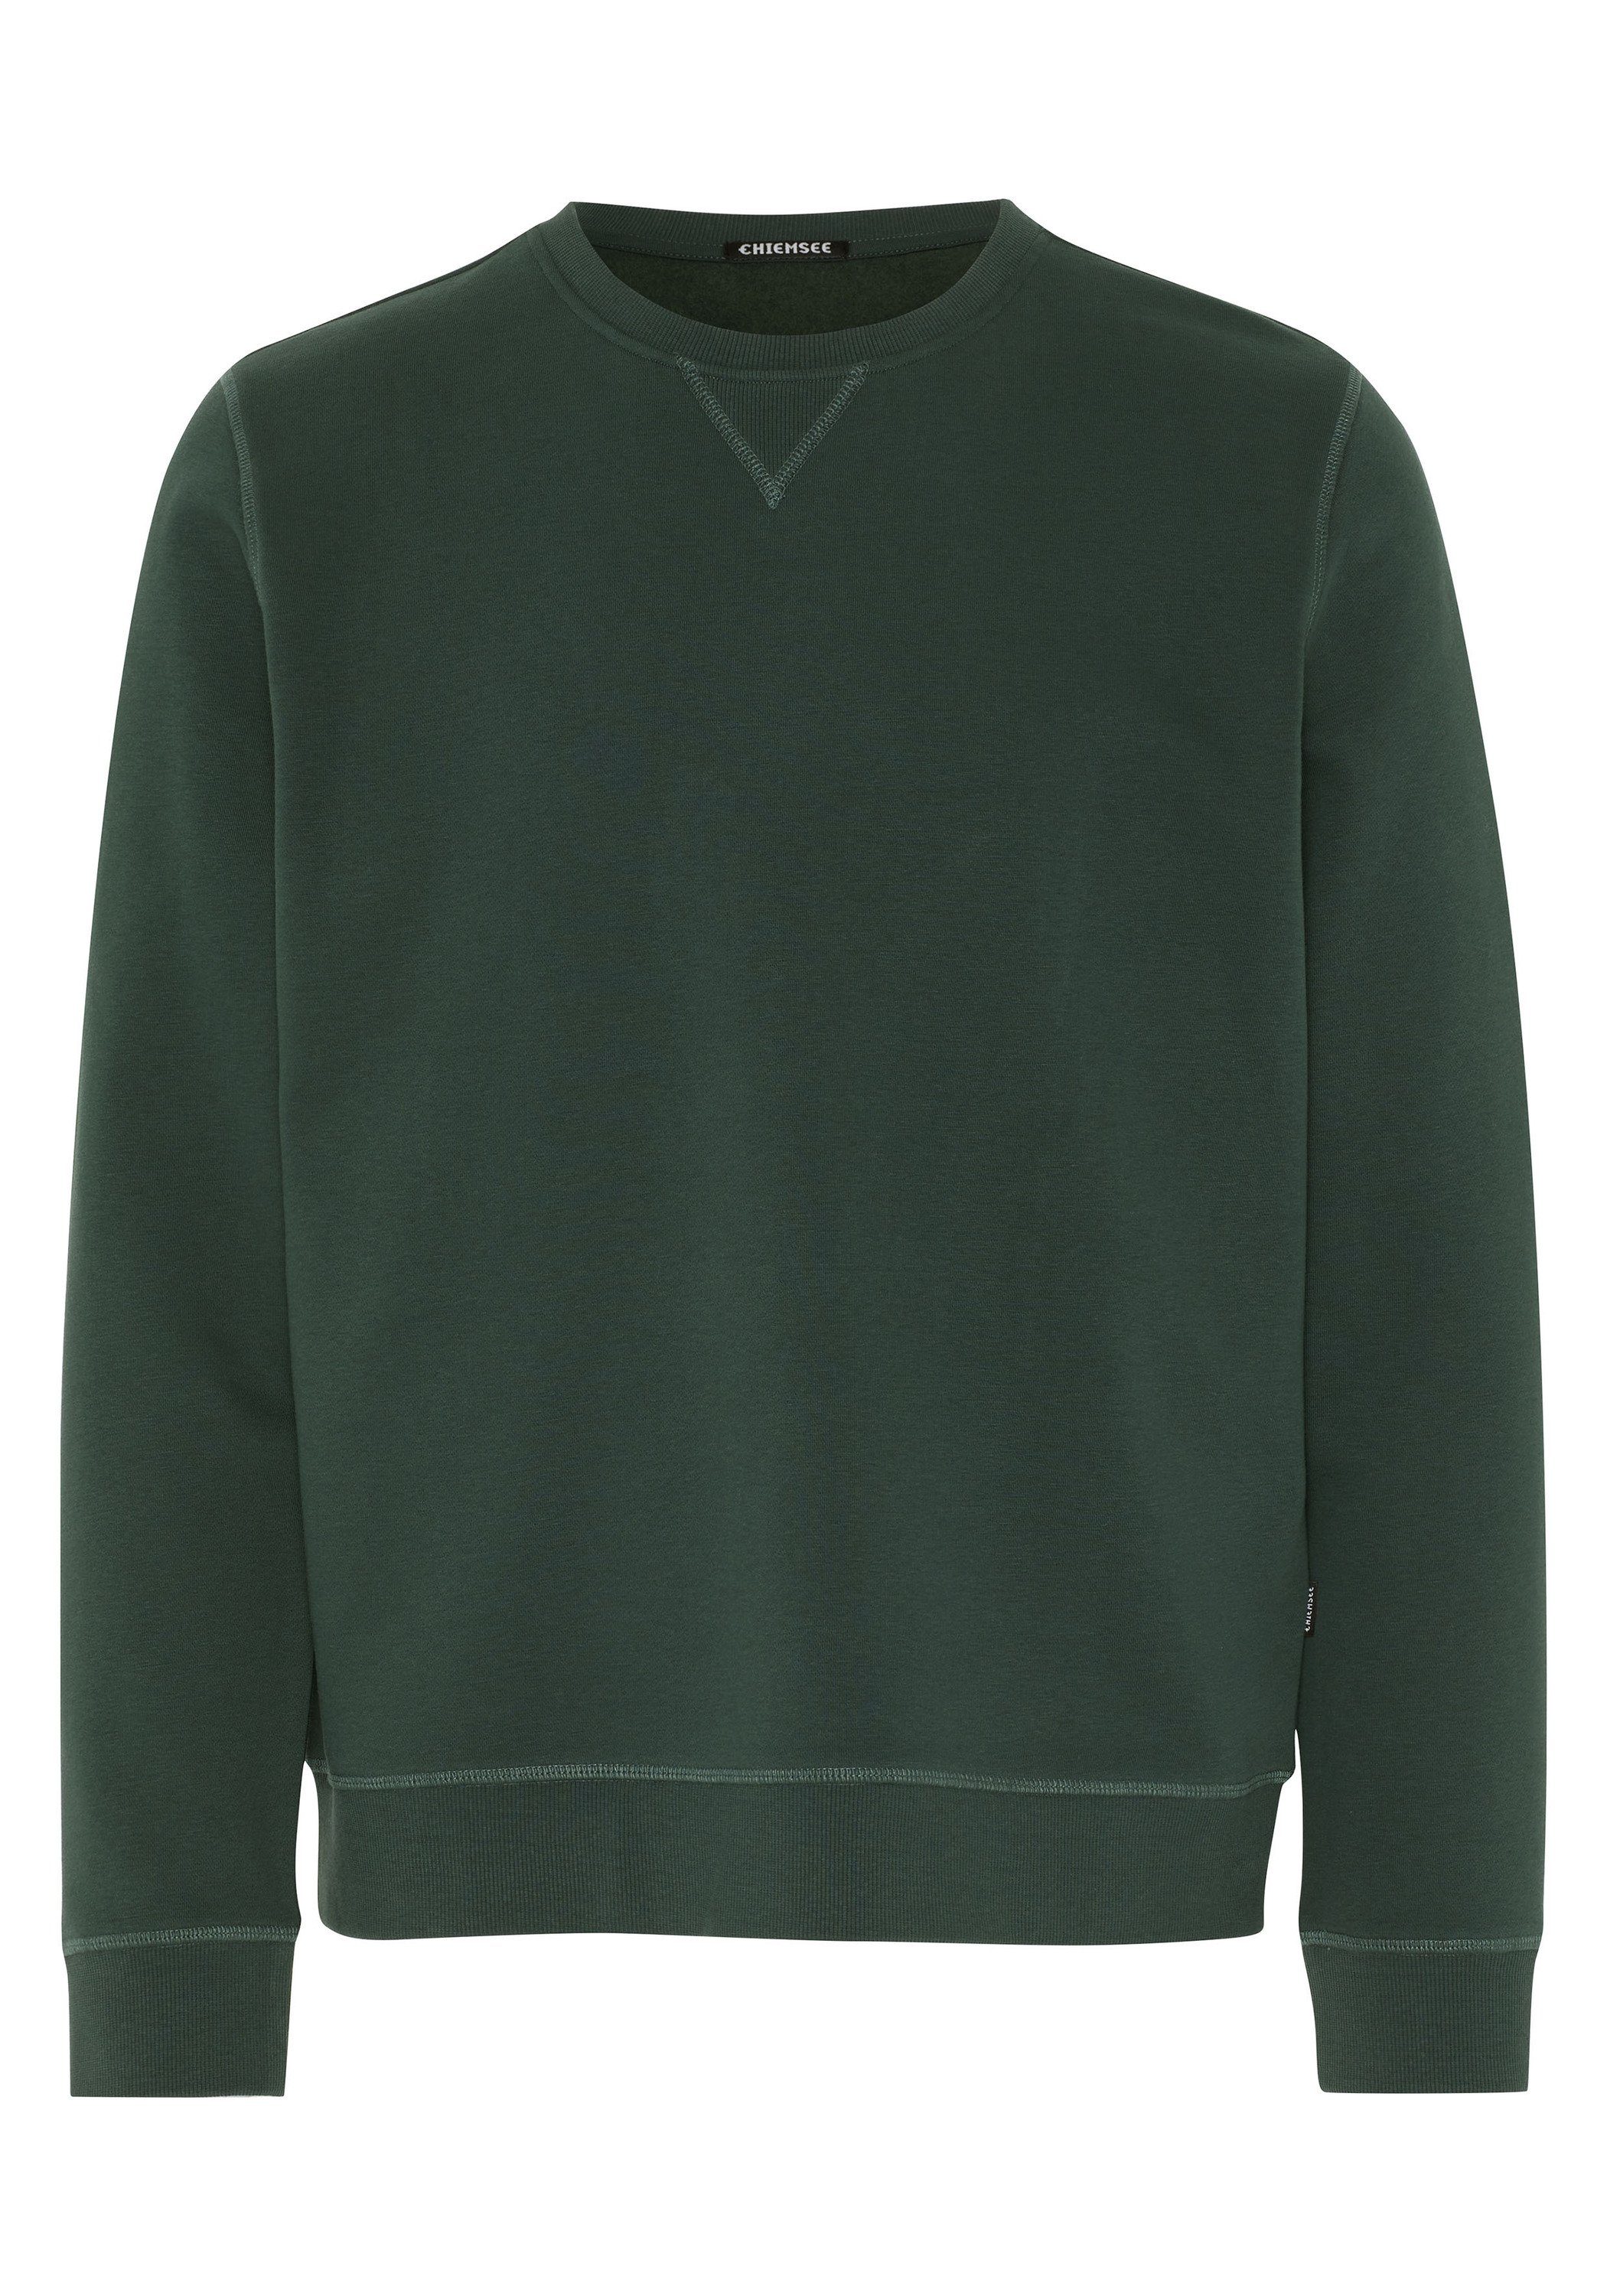 Chiemsee Sweatshirt Sweatshirt mit Jumper-Motiv im Farbverlauf 1 dunkel grün